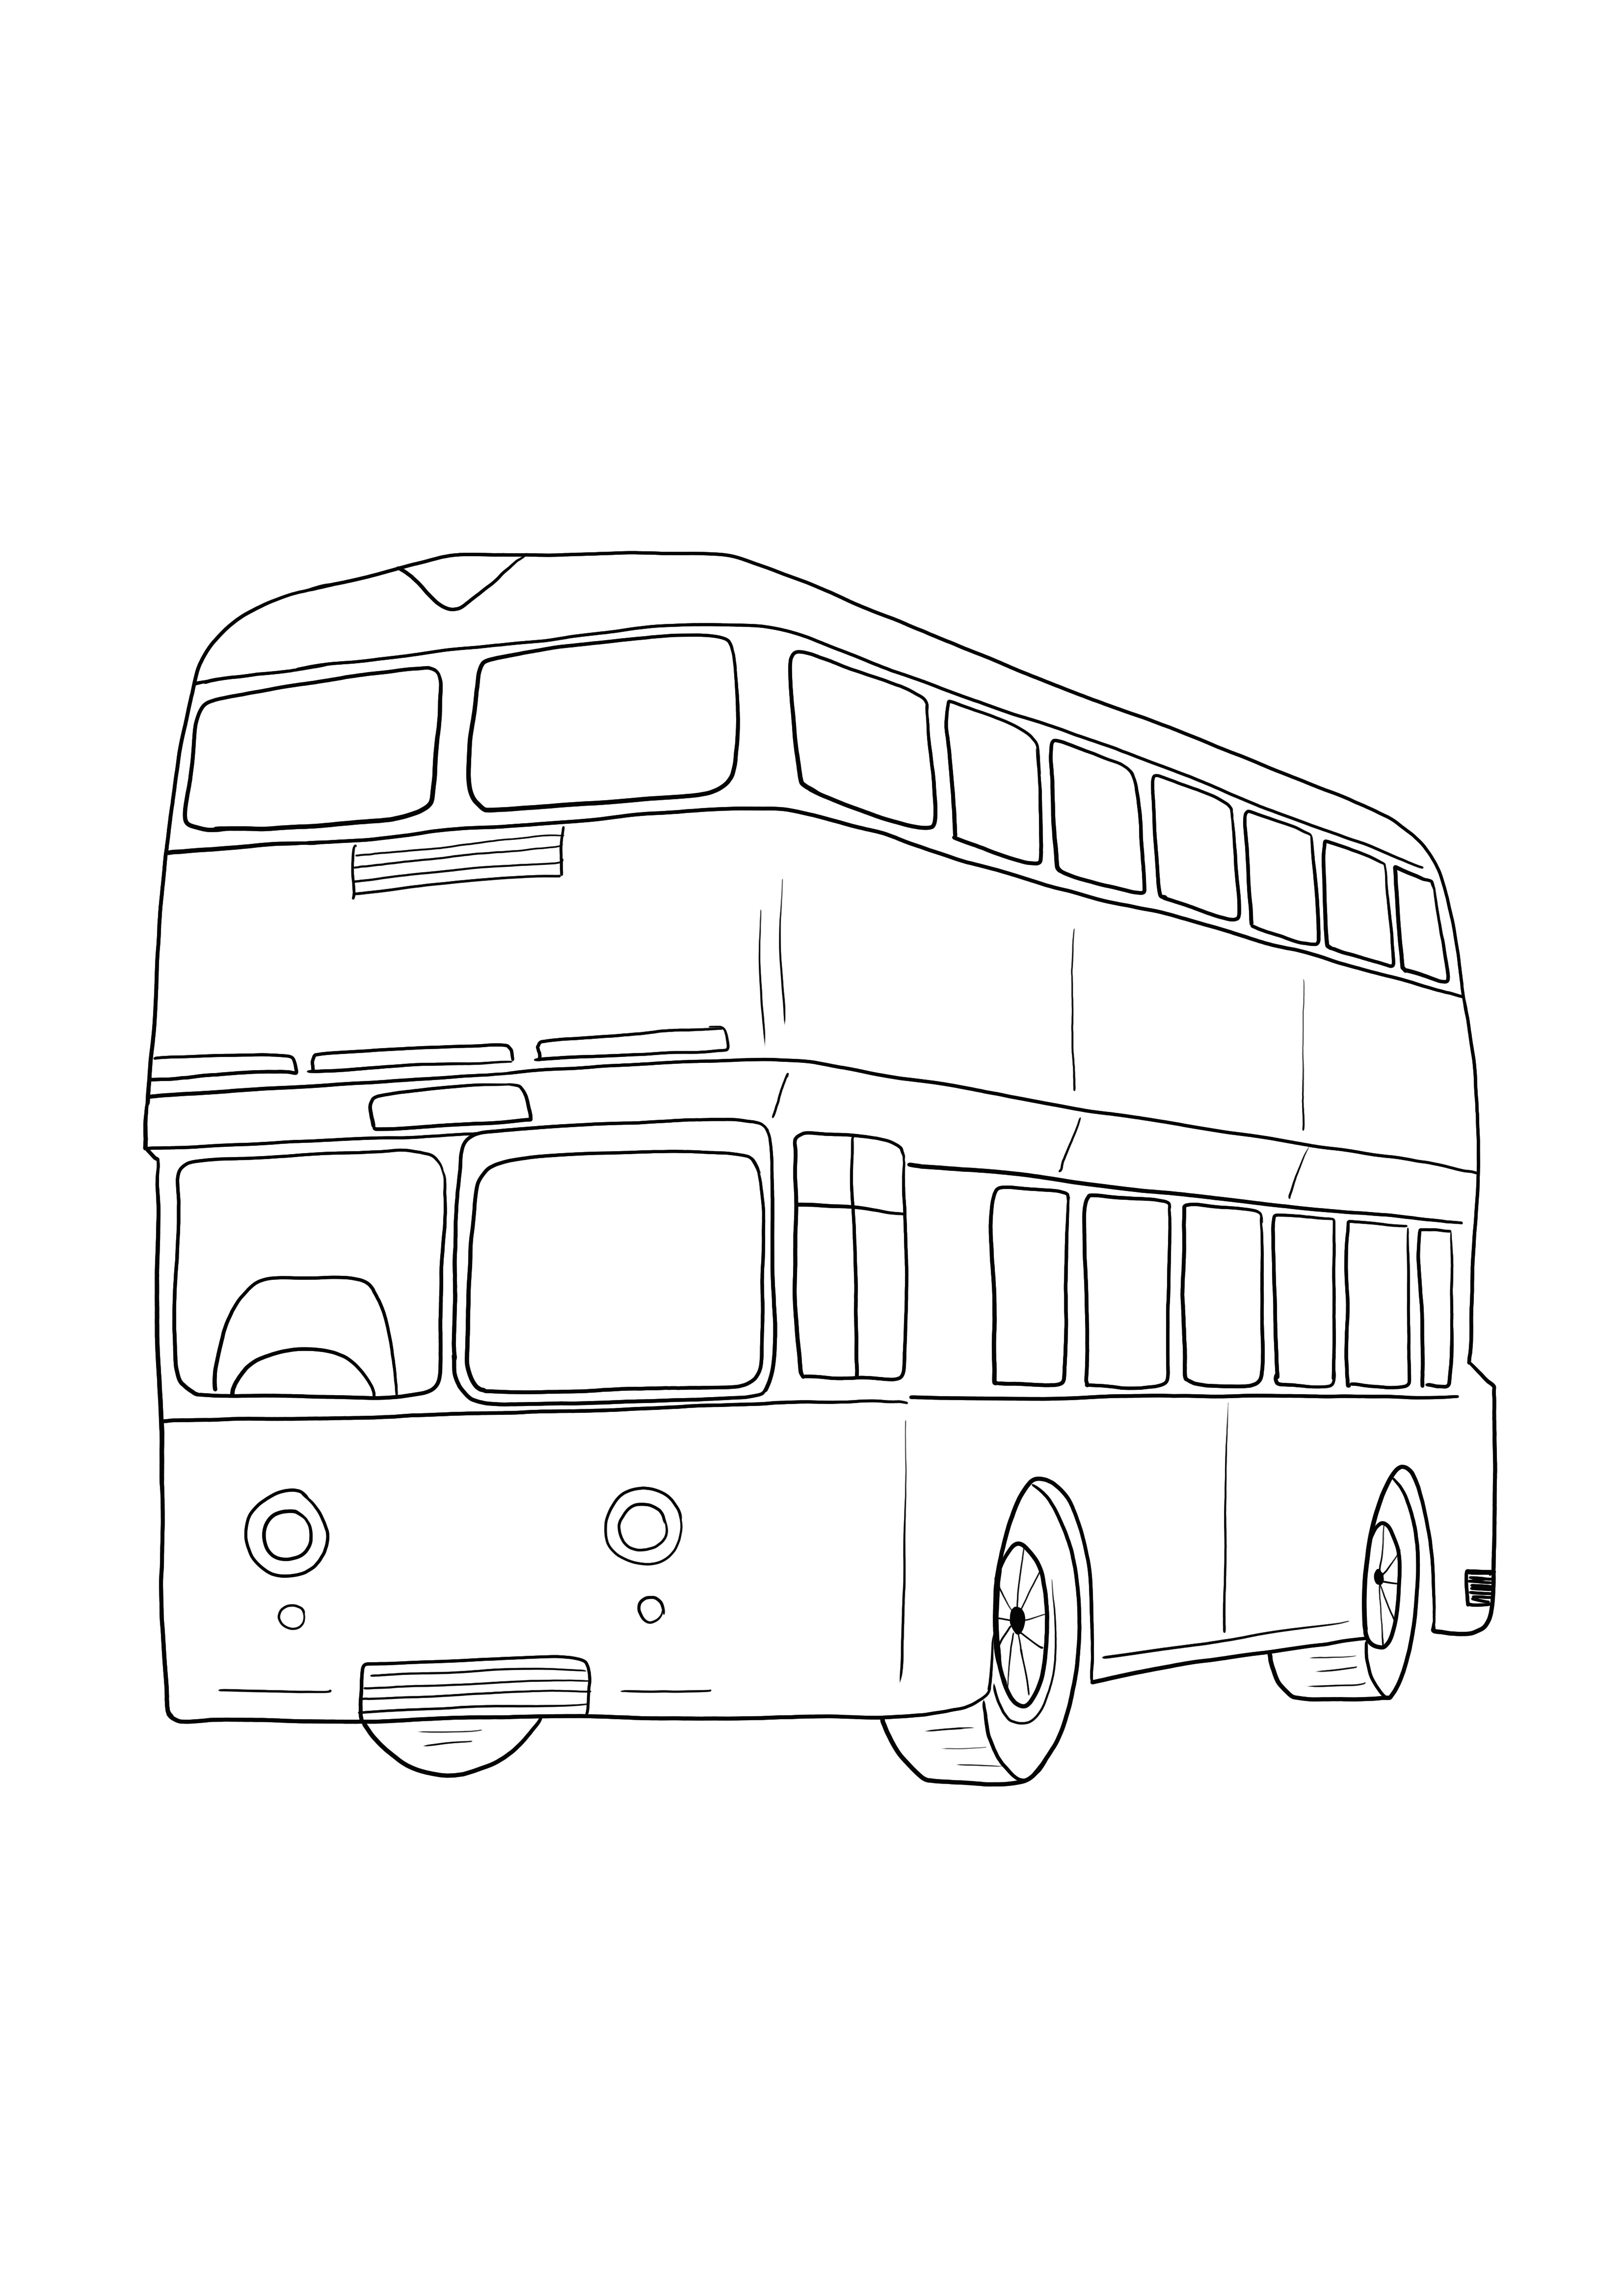 Disegno di autobus a due piani da colorare gratis